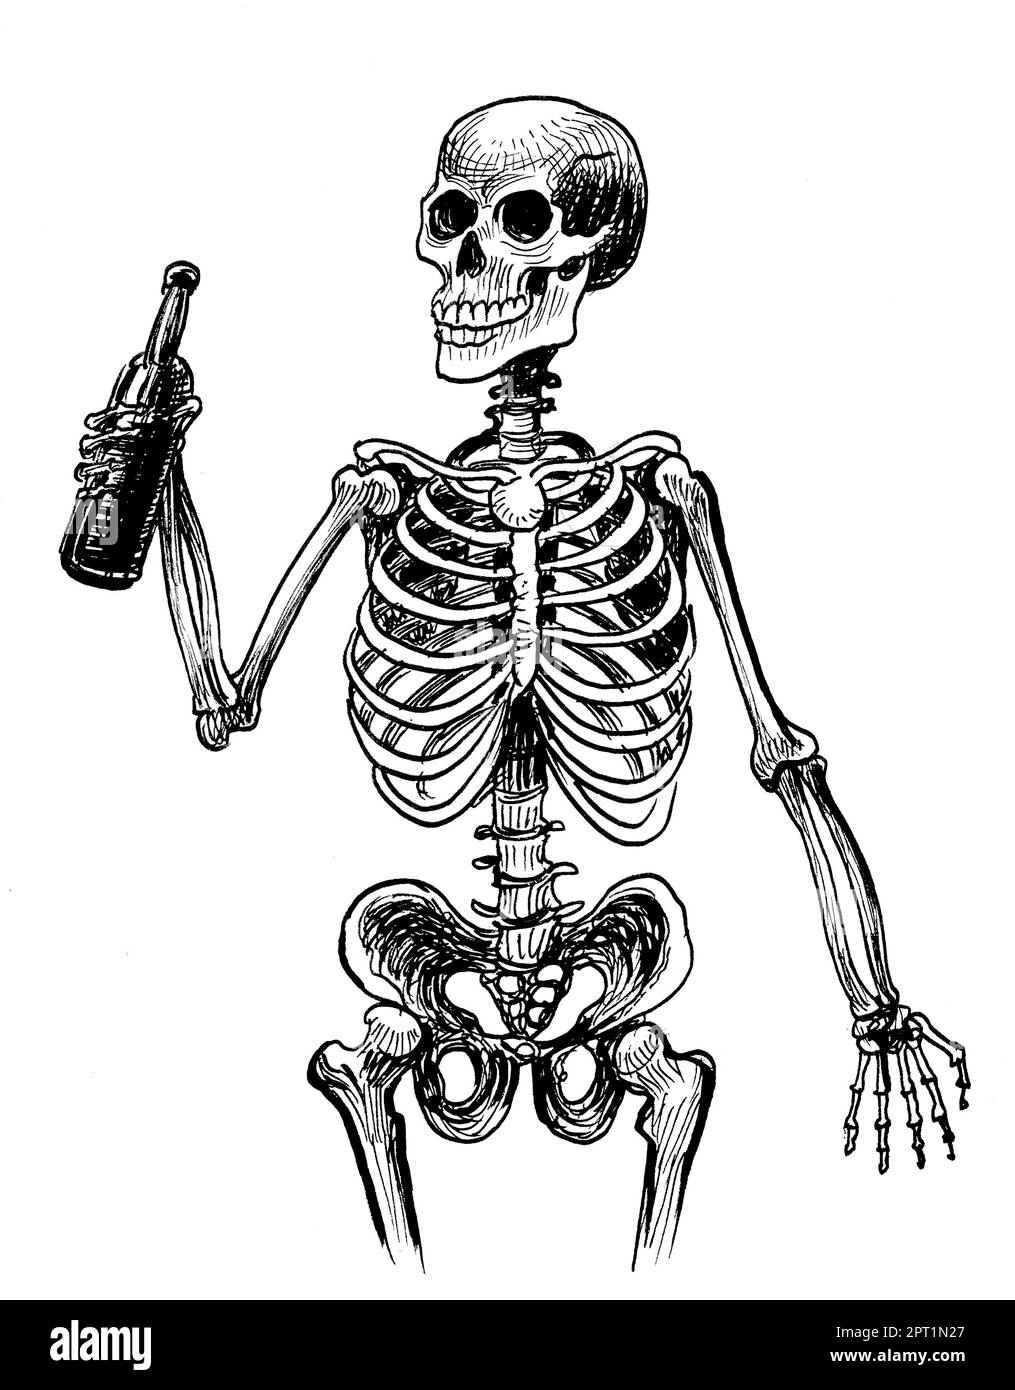 Skelett mit einer Flasche Bier. Handgezeichnete Tinte auf schwarz-weißer Papierzeichnung Stockfoto